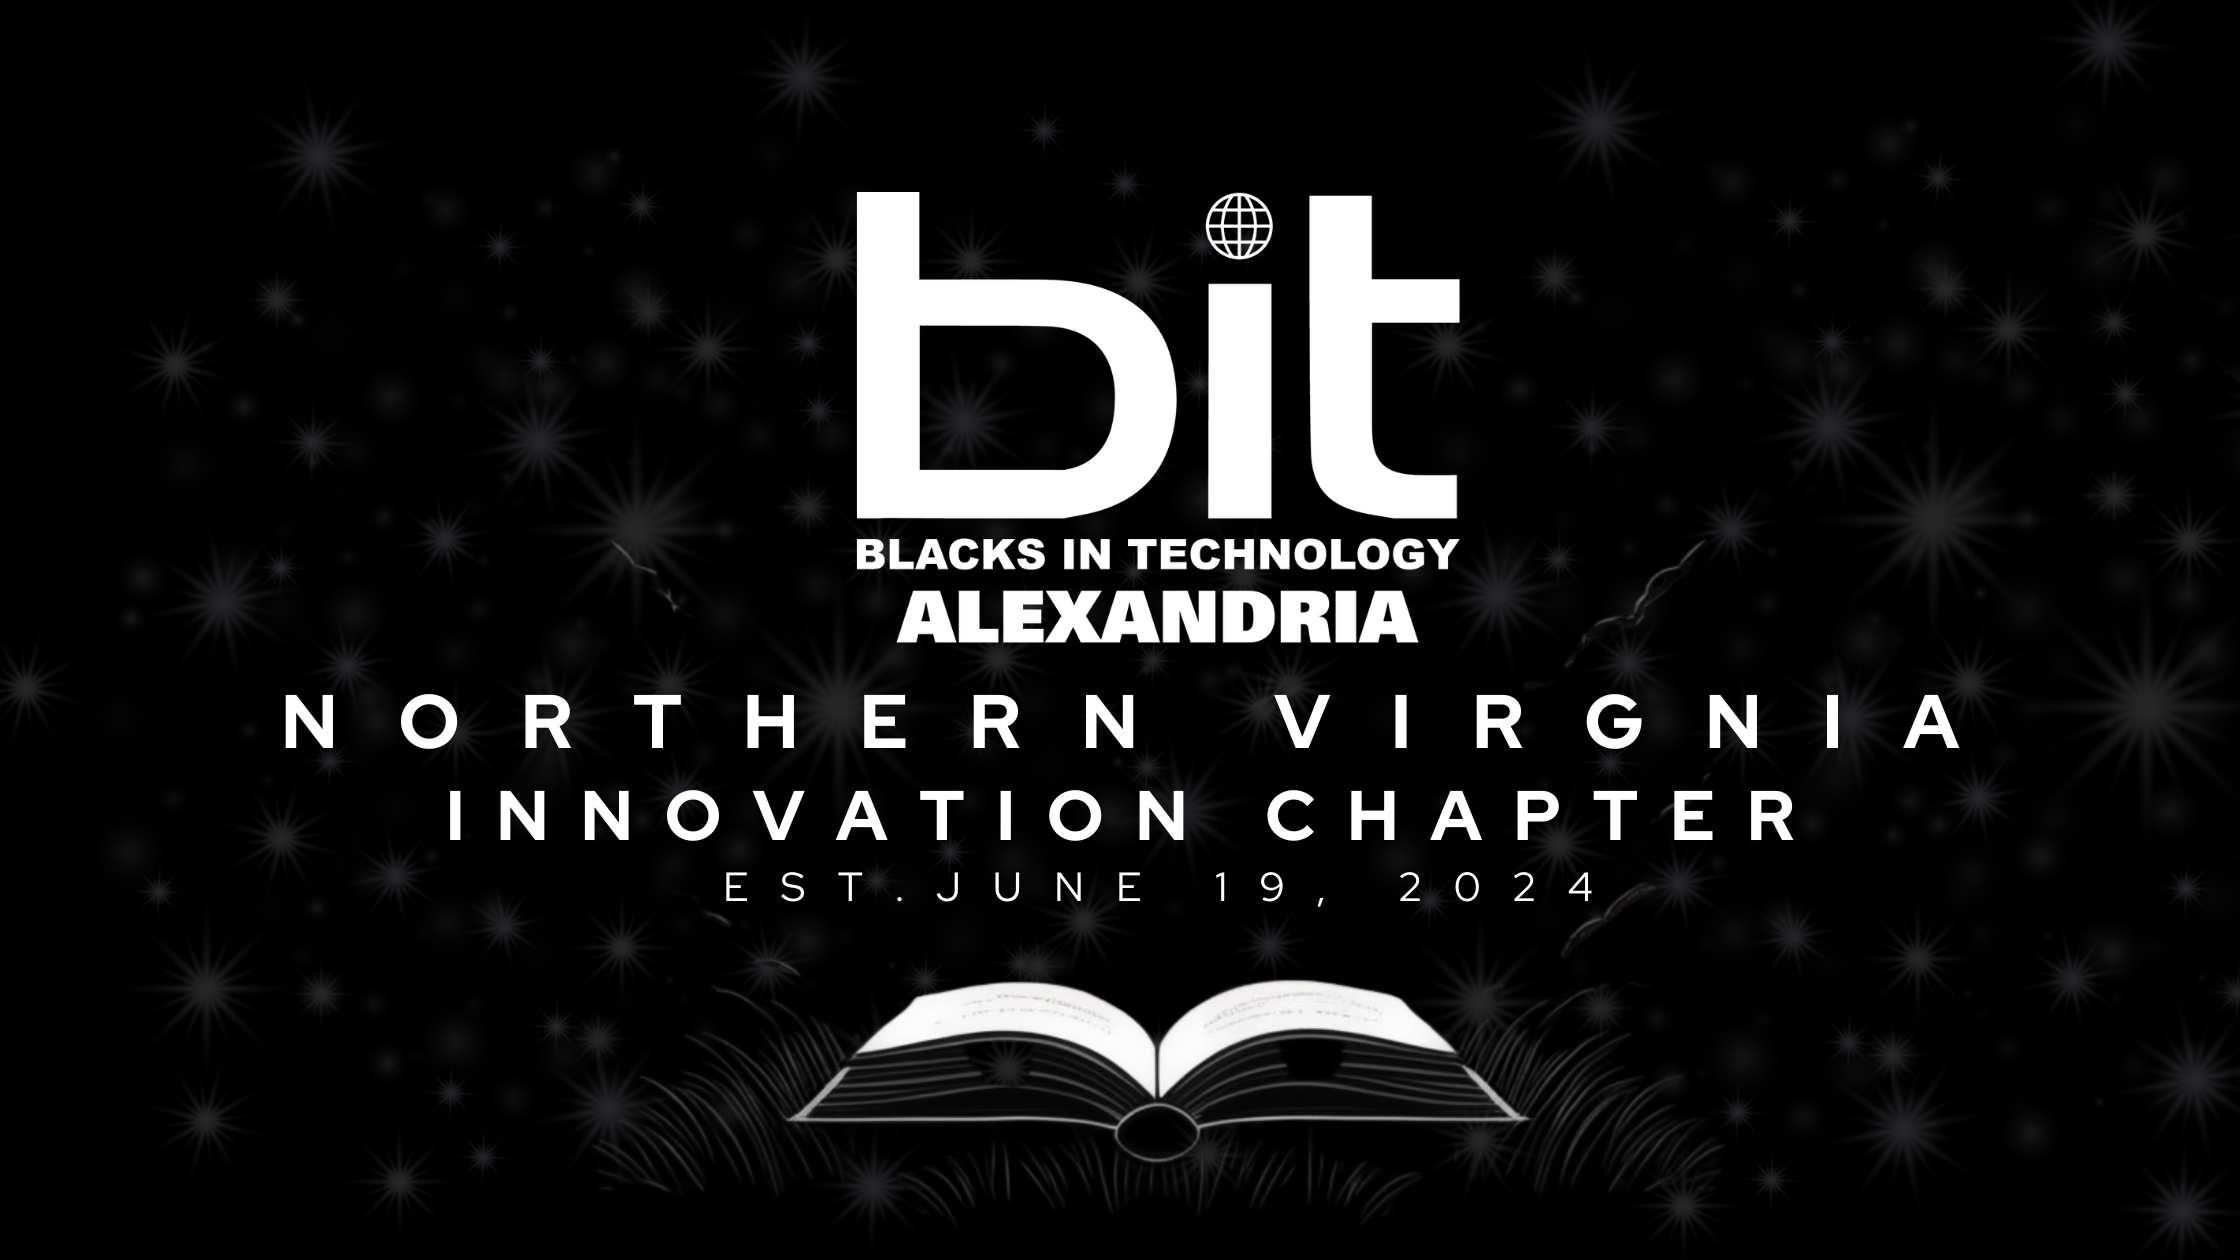 BIT Alexandria Launches in Virginia